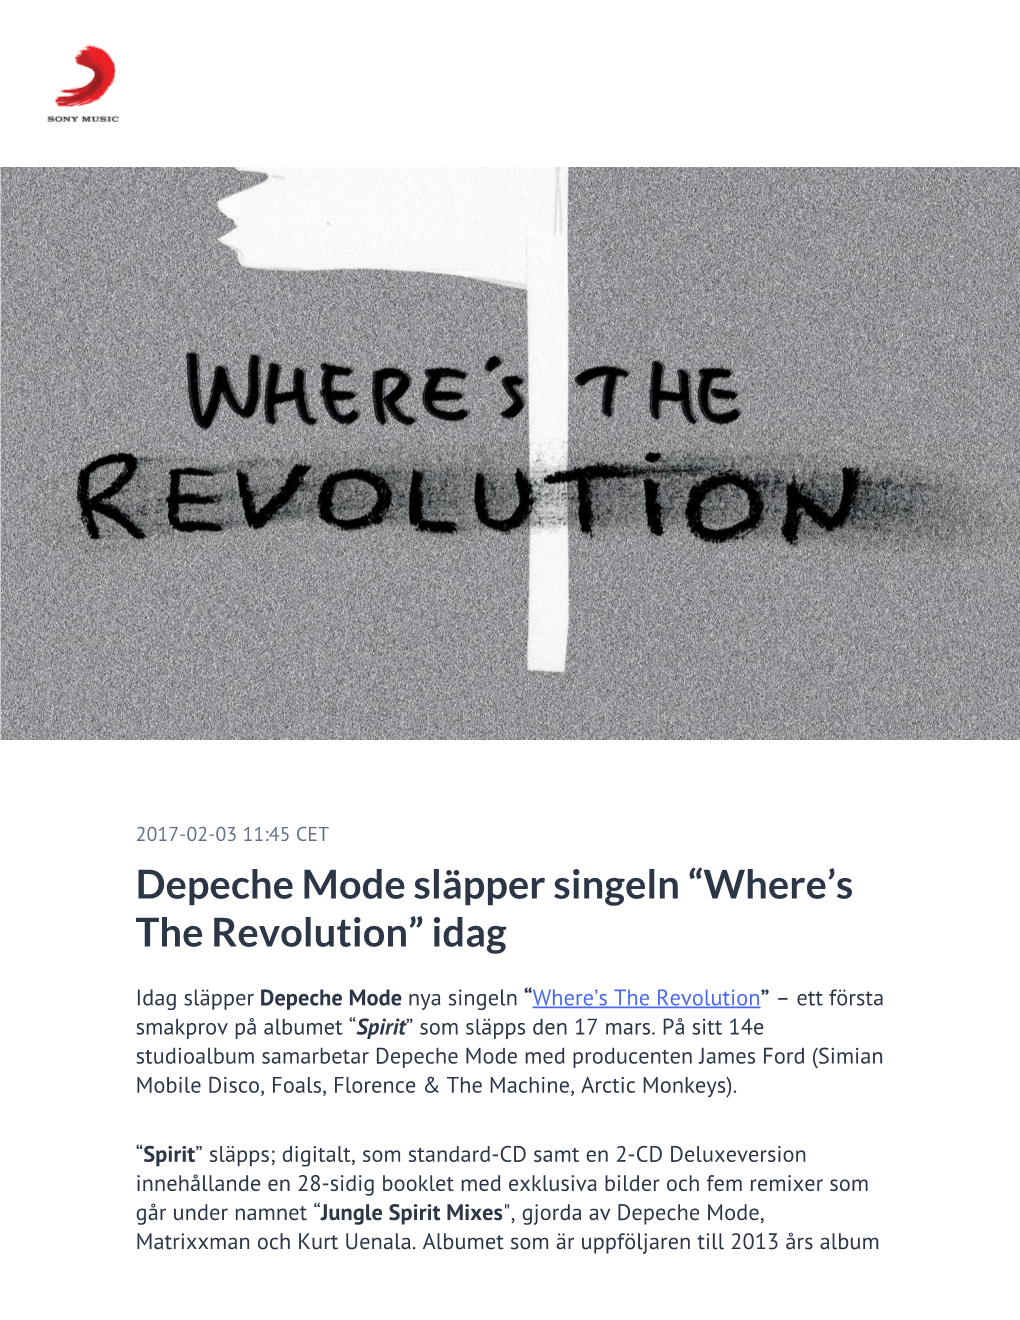 ​Depeche Mode Släpper Singeln “Where's the Revolution” Idag